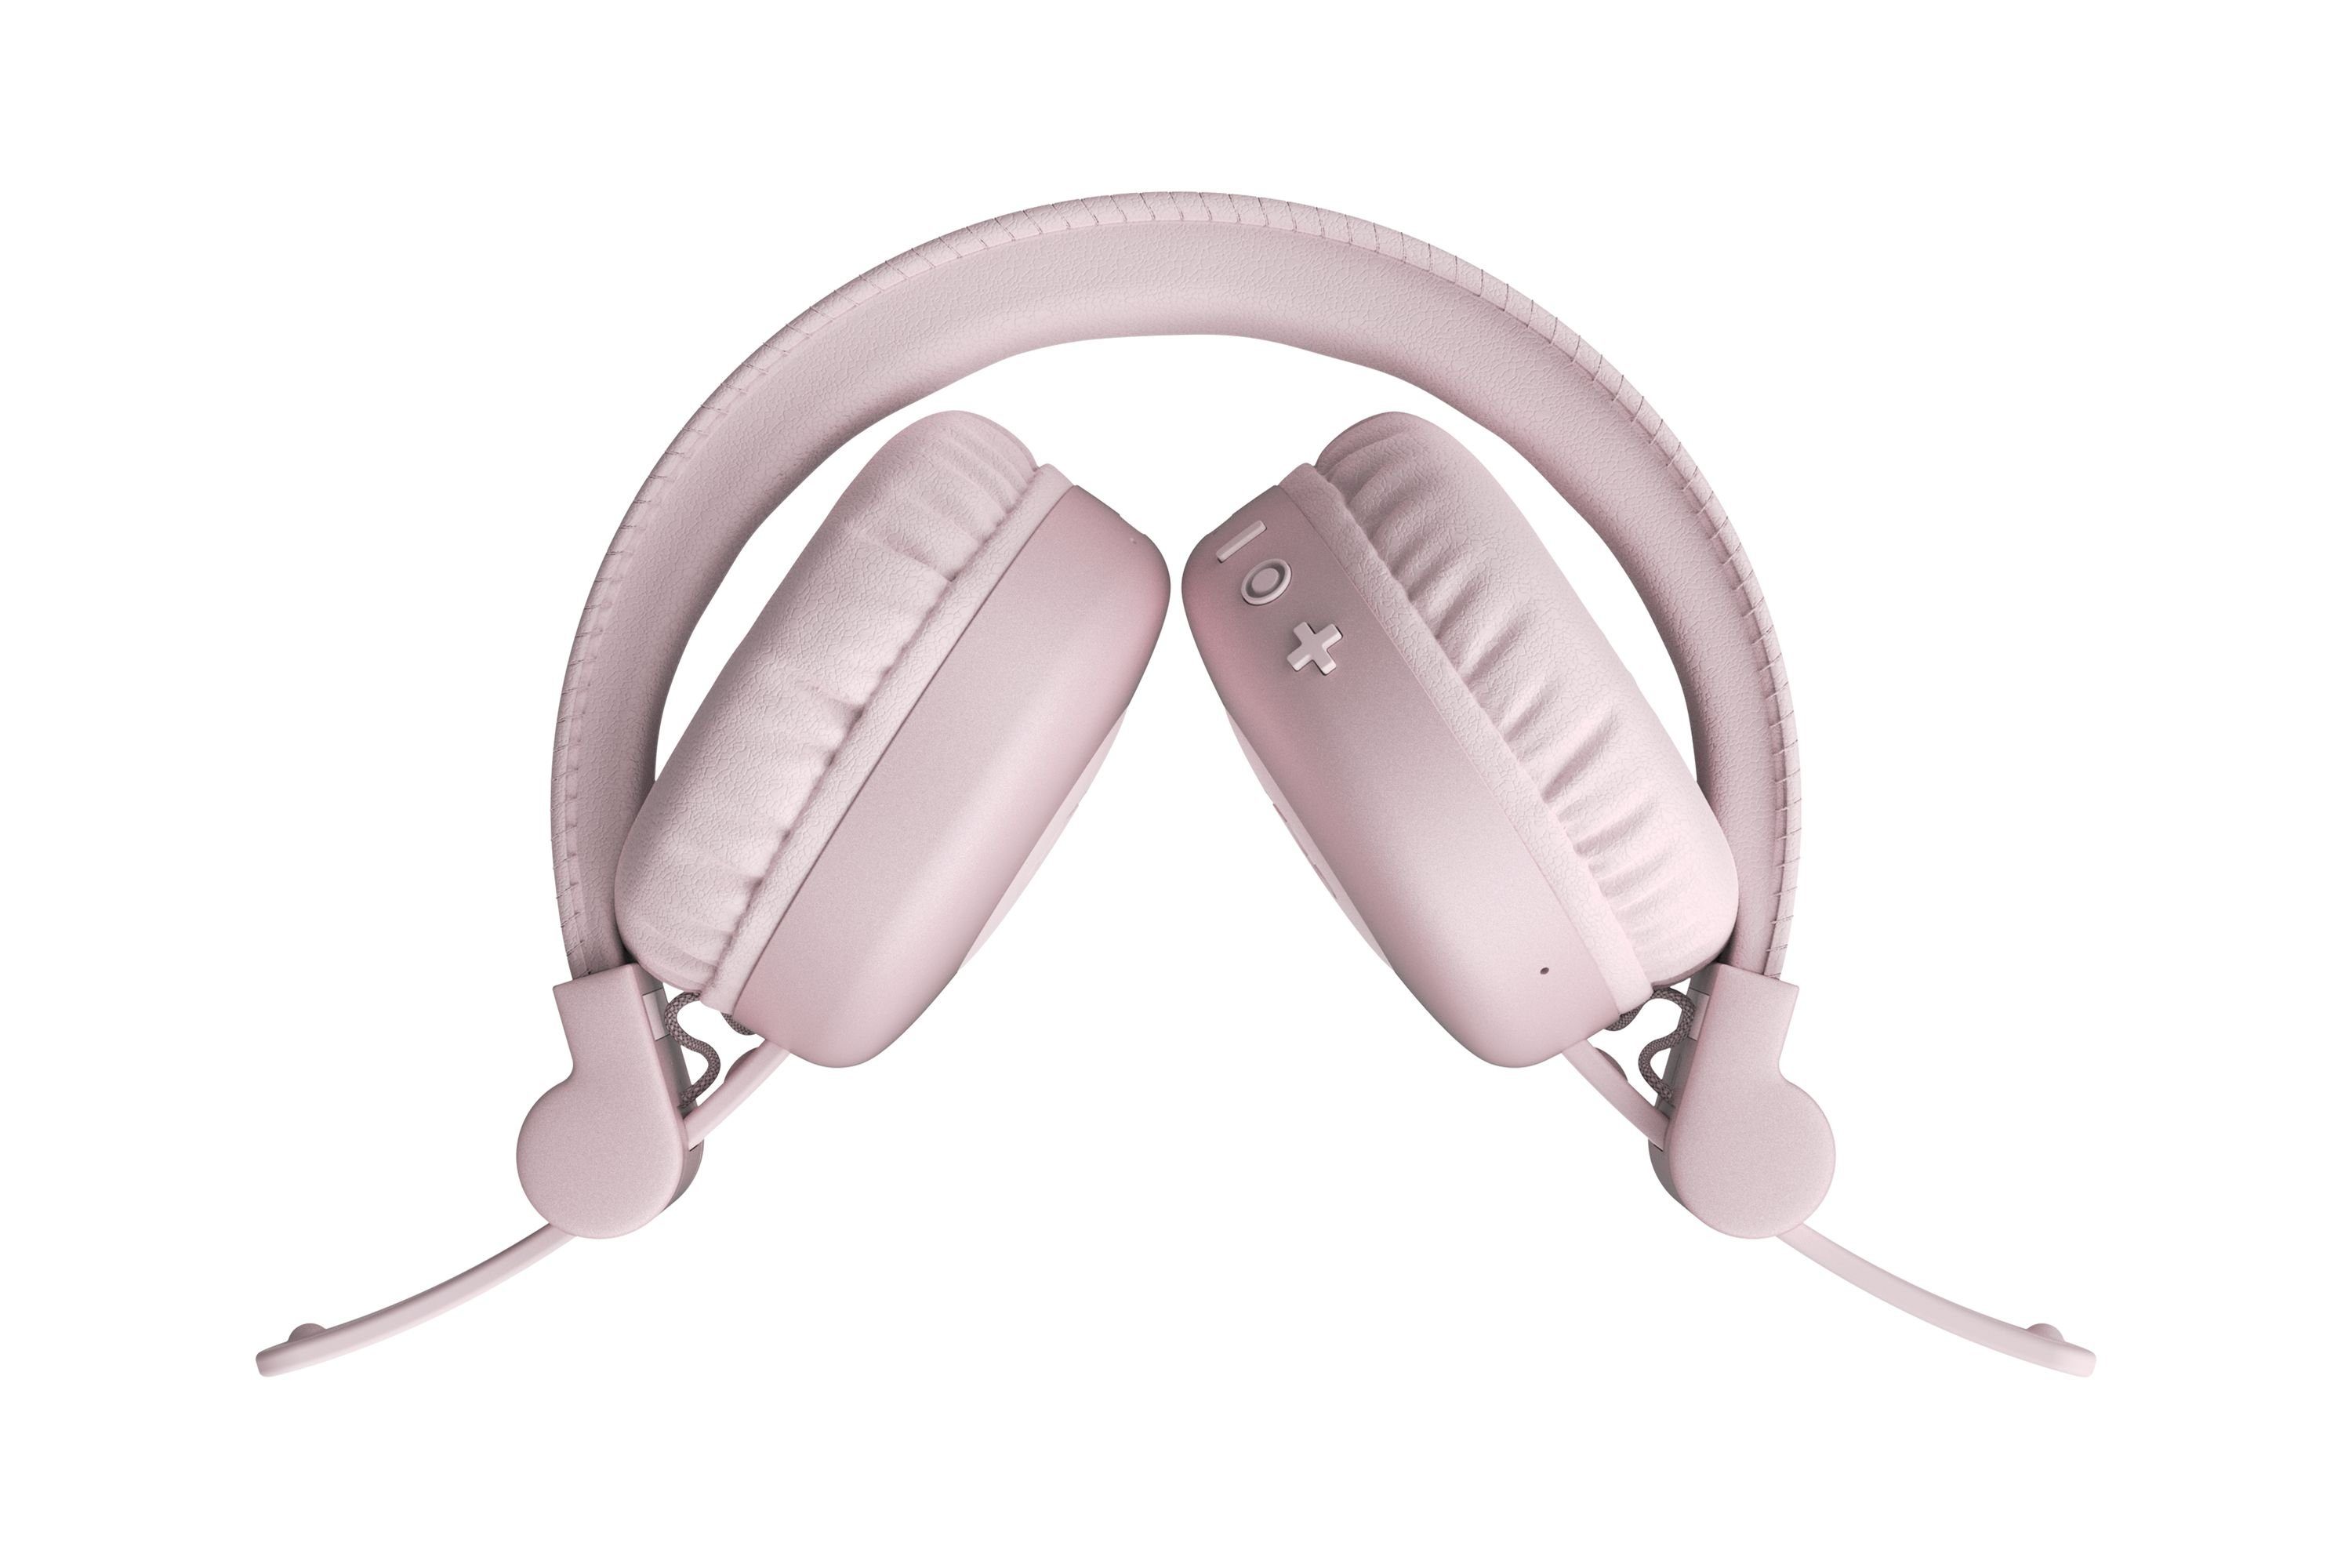 Fresh´n Rebel Faltbares Code Smokey 30 Wiedergabezeit, und Pink leichtes wireless Kabellose mit Stunden Kopfhörer Design) (Vintage-Retro-Design, Freiheit Core